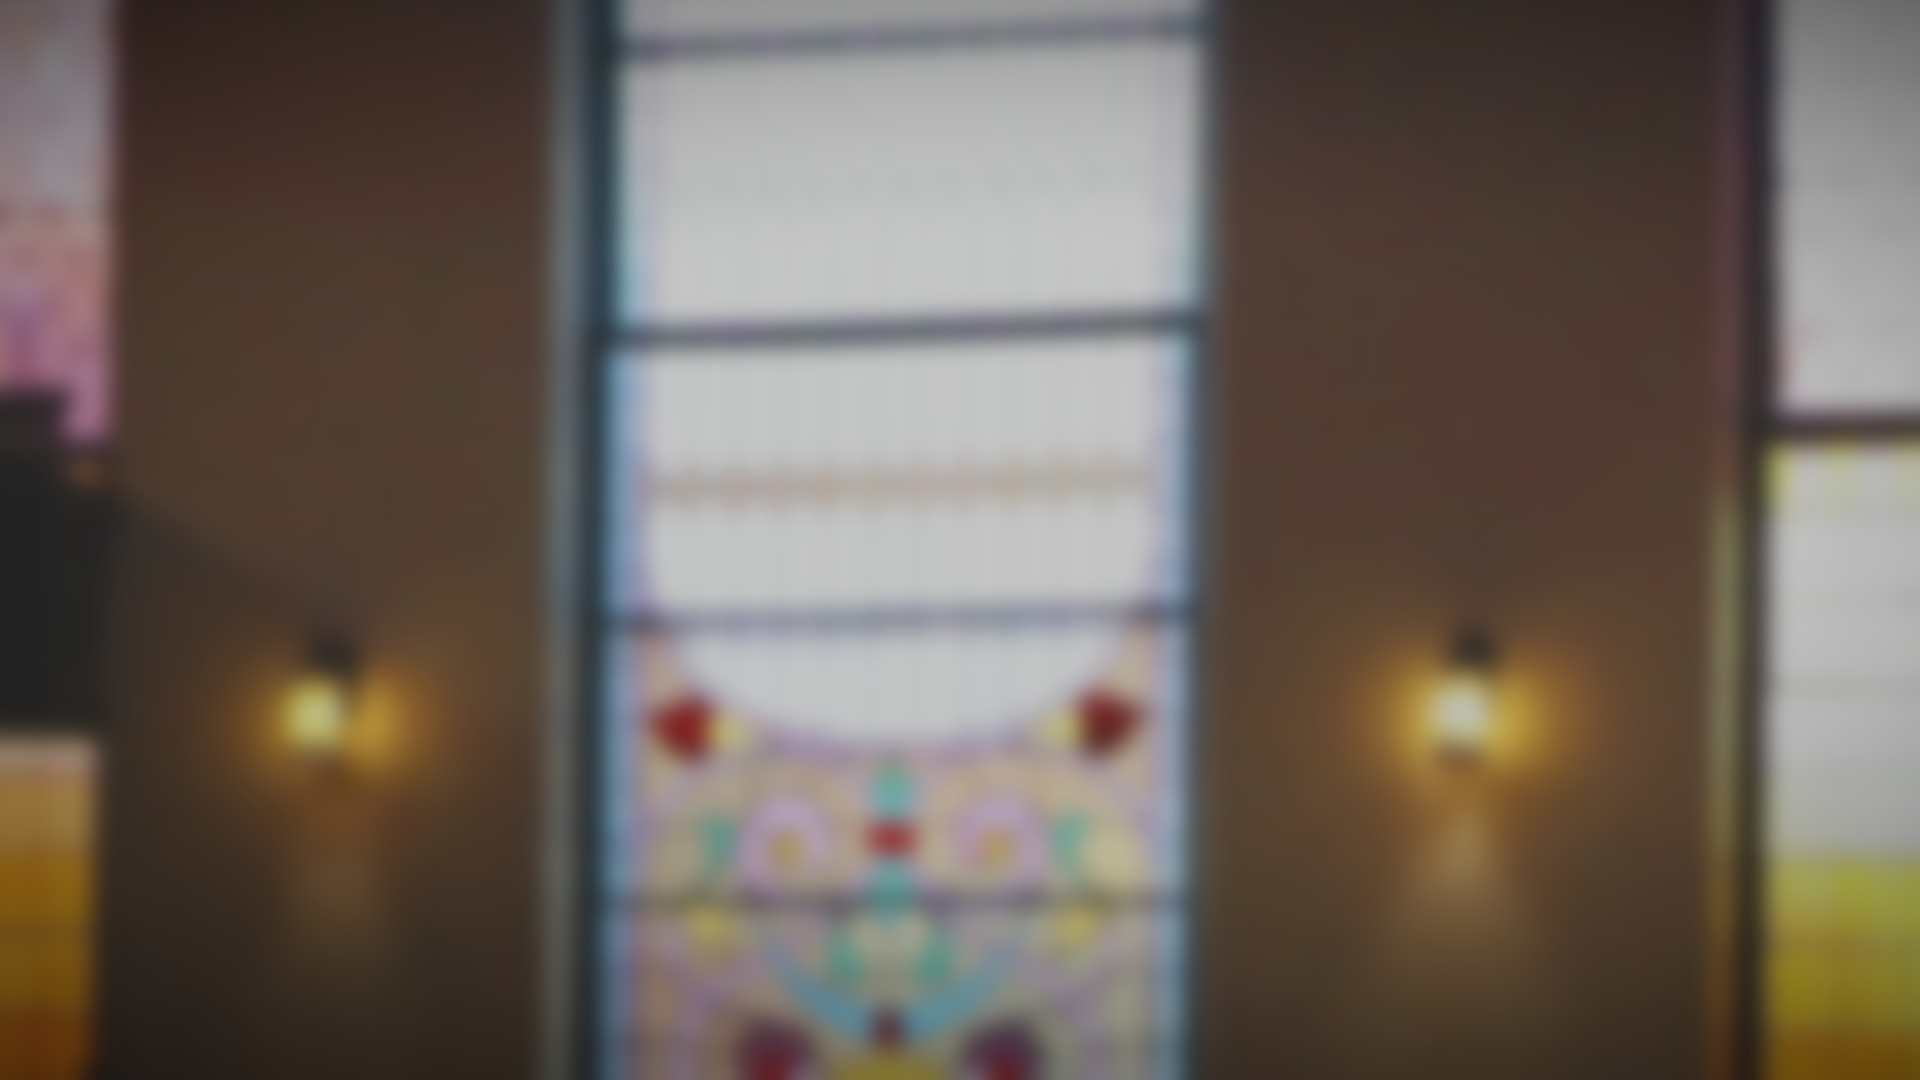 blurry sanctuary in a church